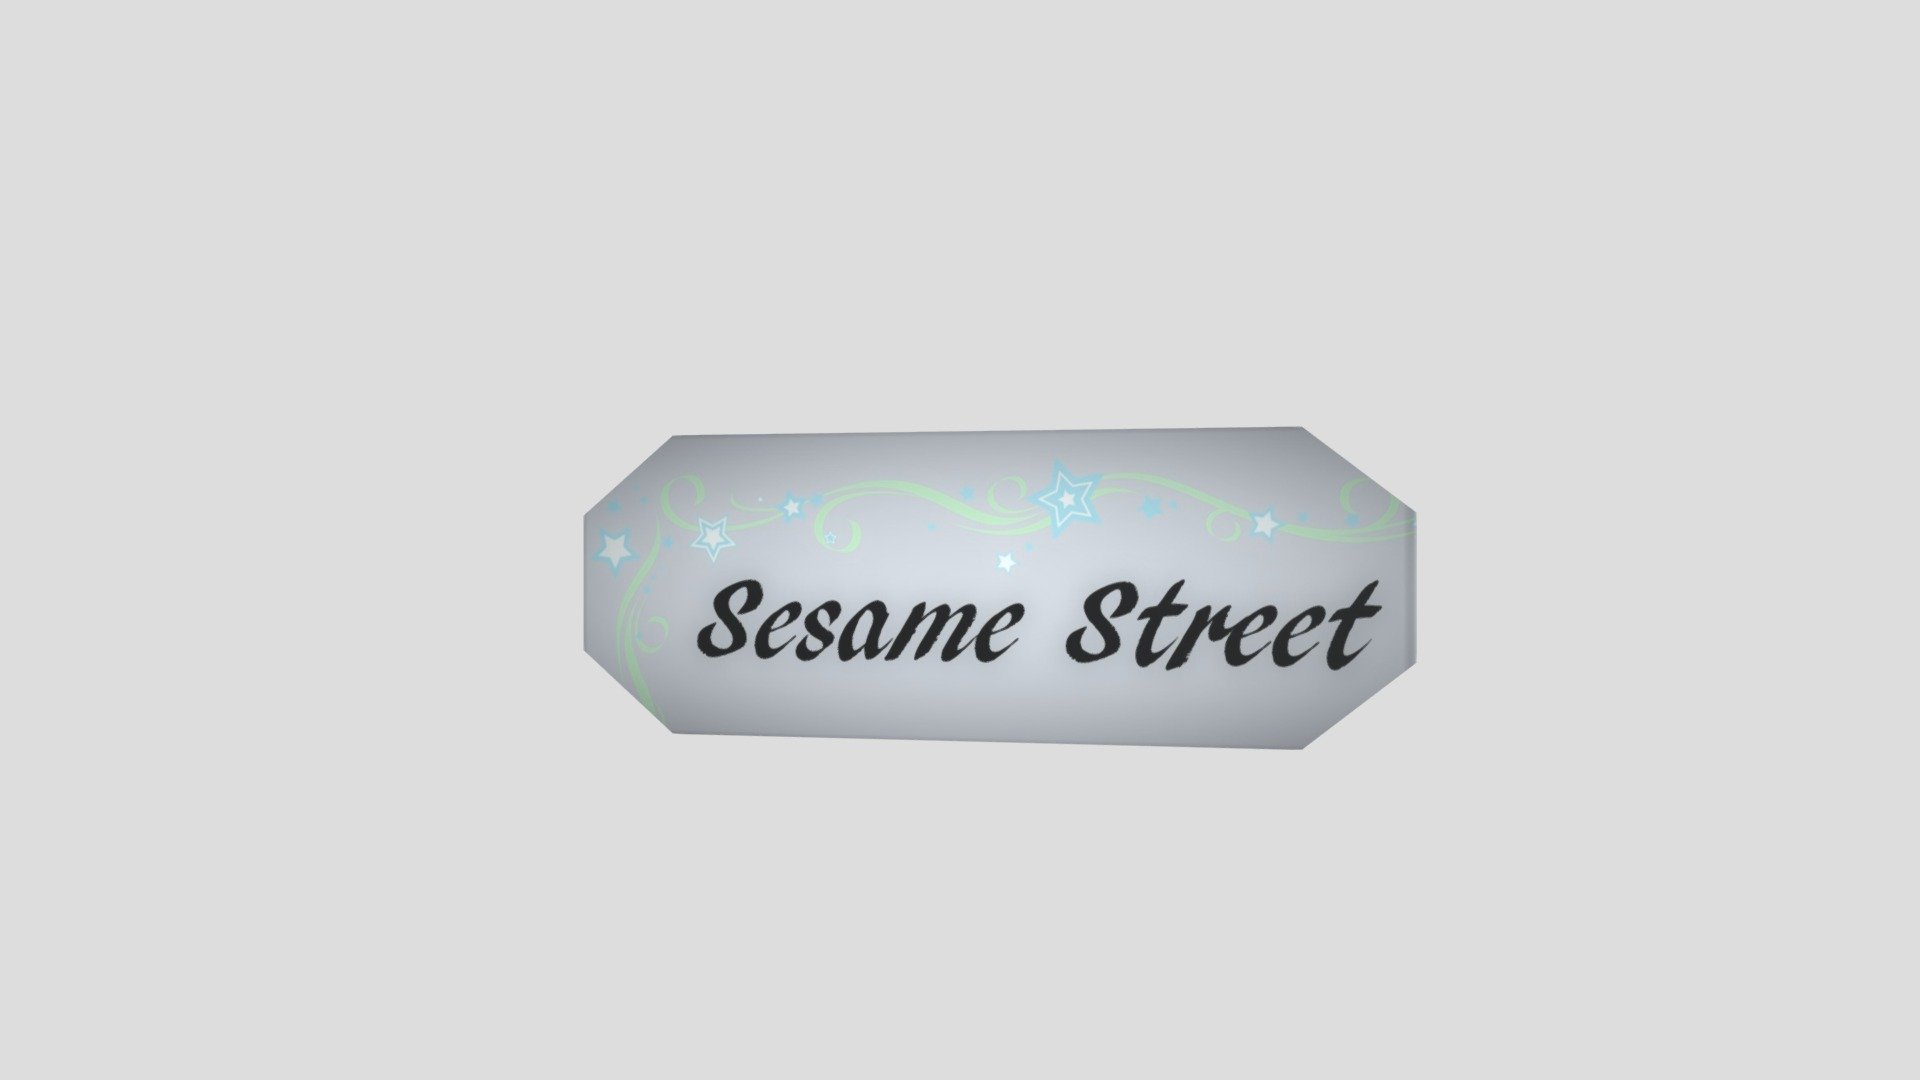 OCF Street Sign Sesame St